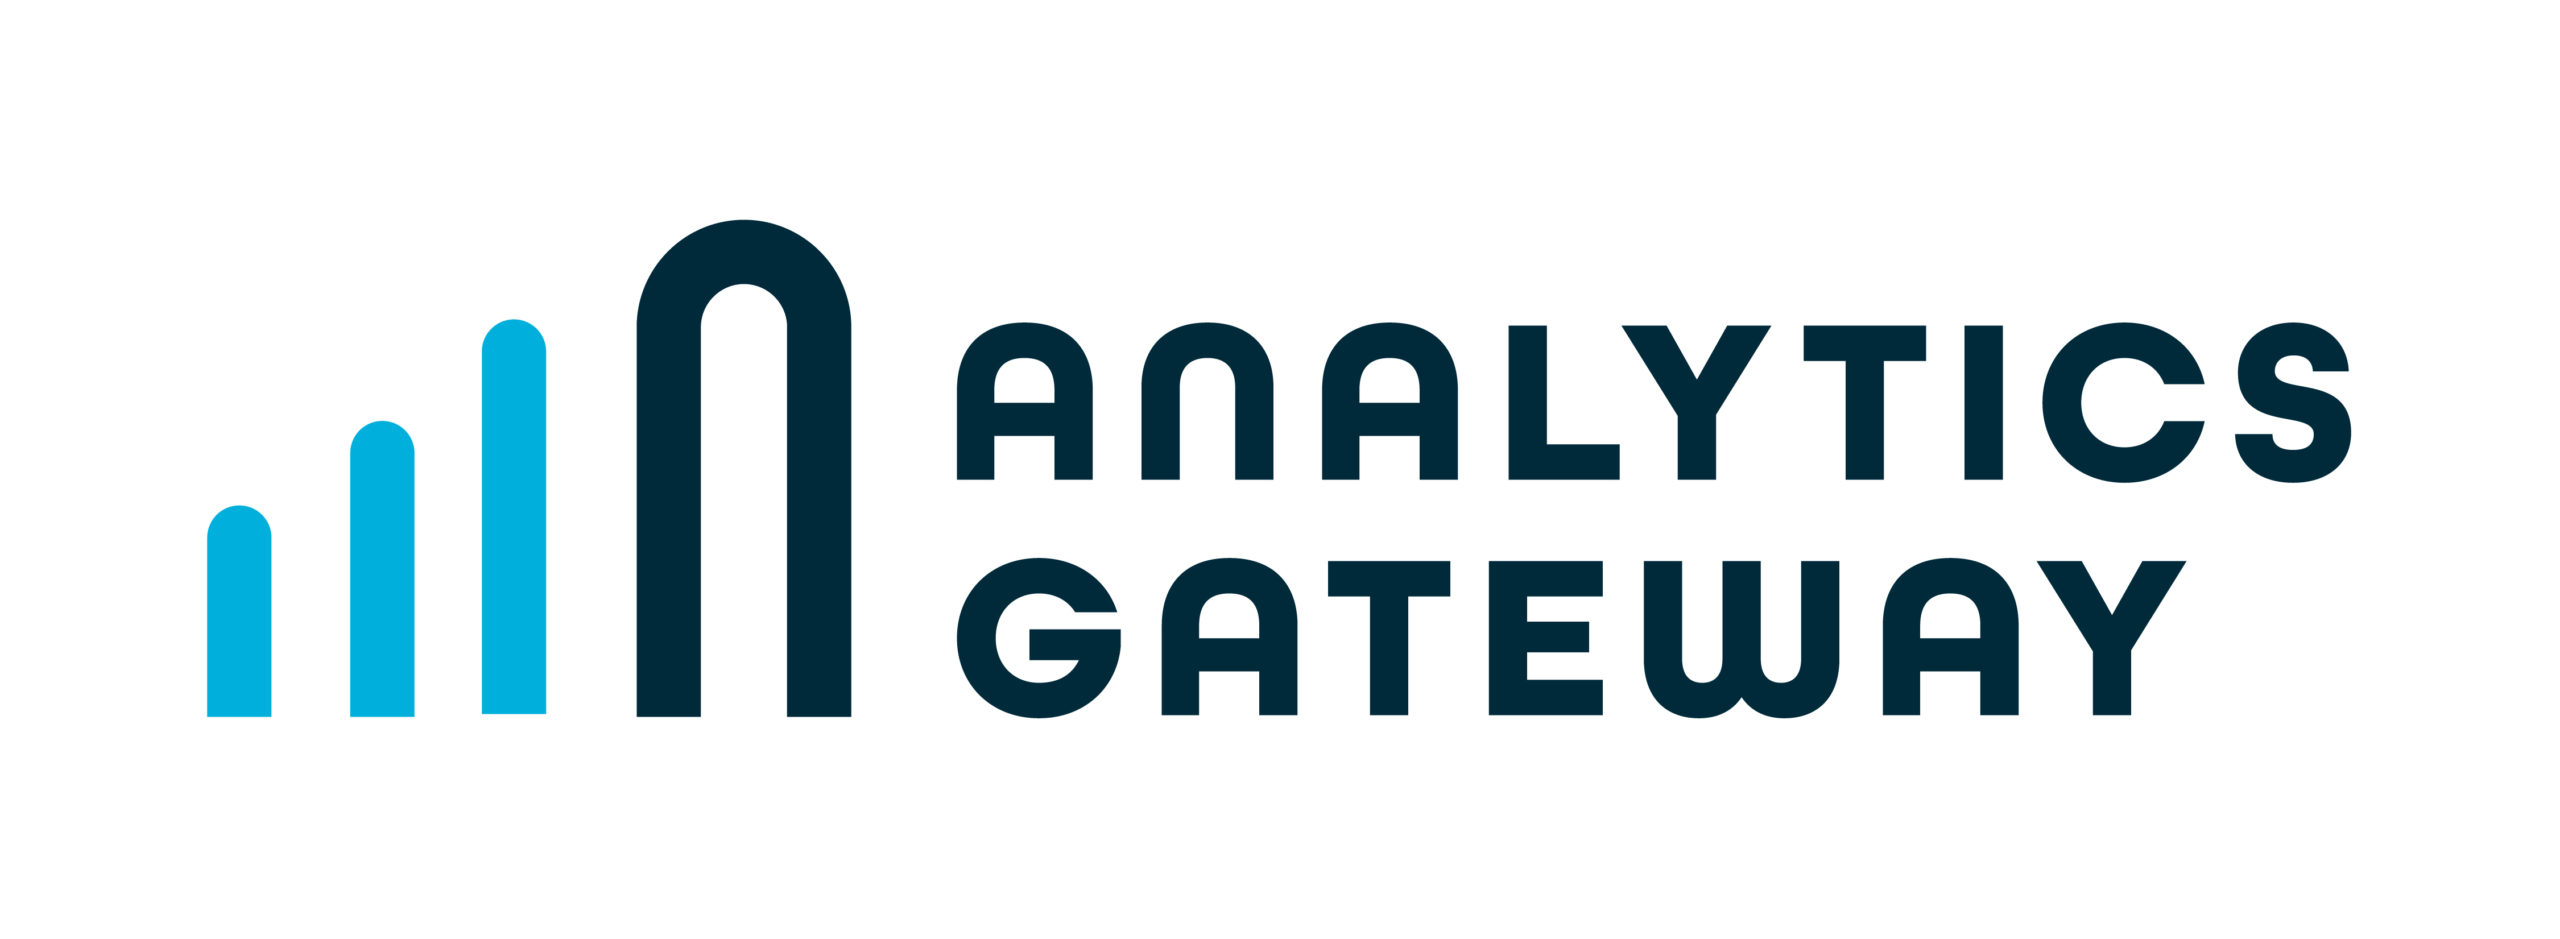 Analytics Gateway Logo